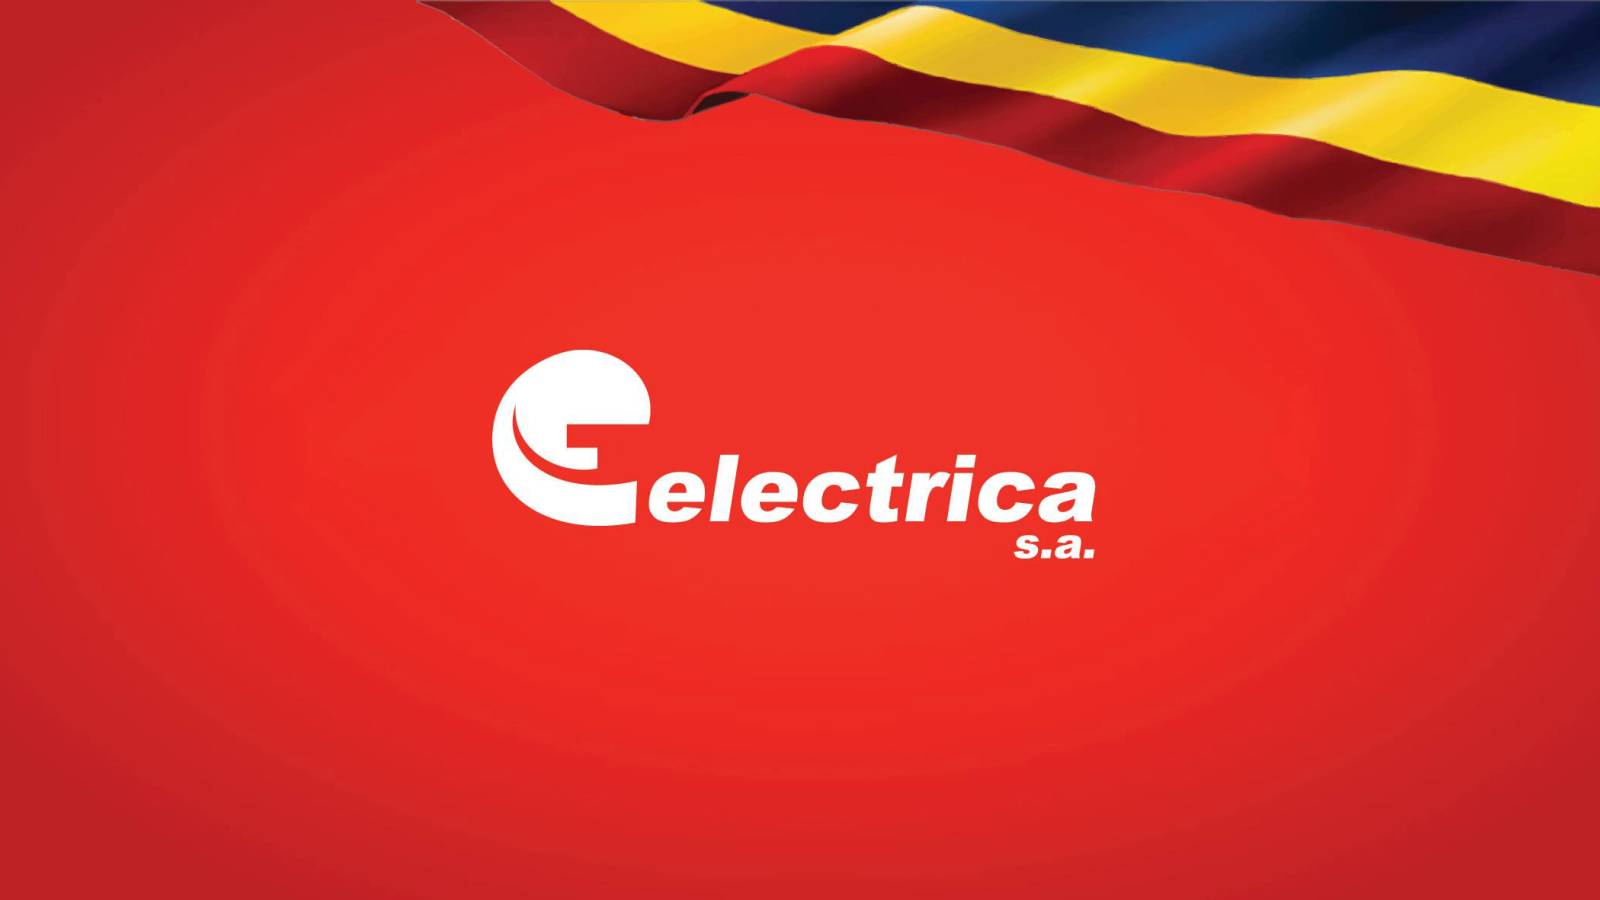 Tillkännagivande ELECTRICA Formell SISTA Ögonblicket Uppmärksamhet MILJONER rumäner över hela landet